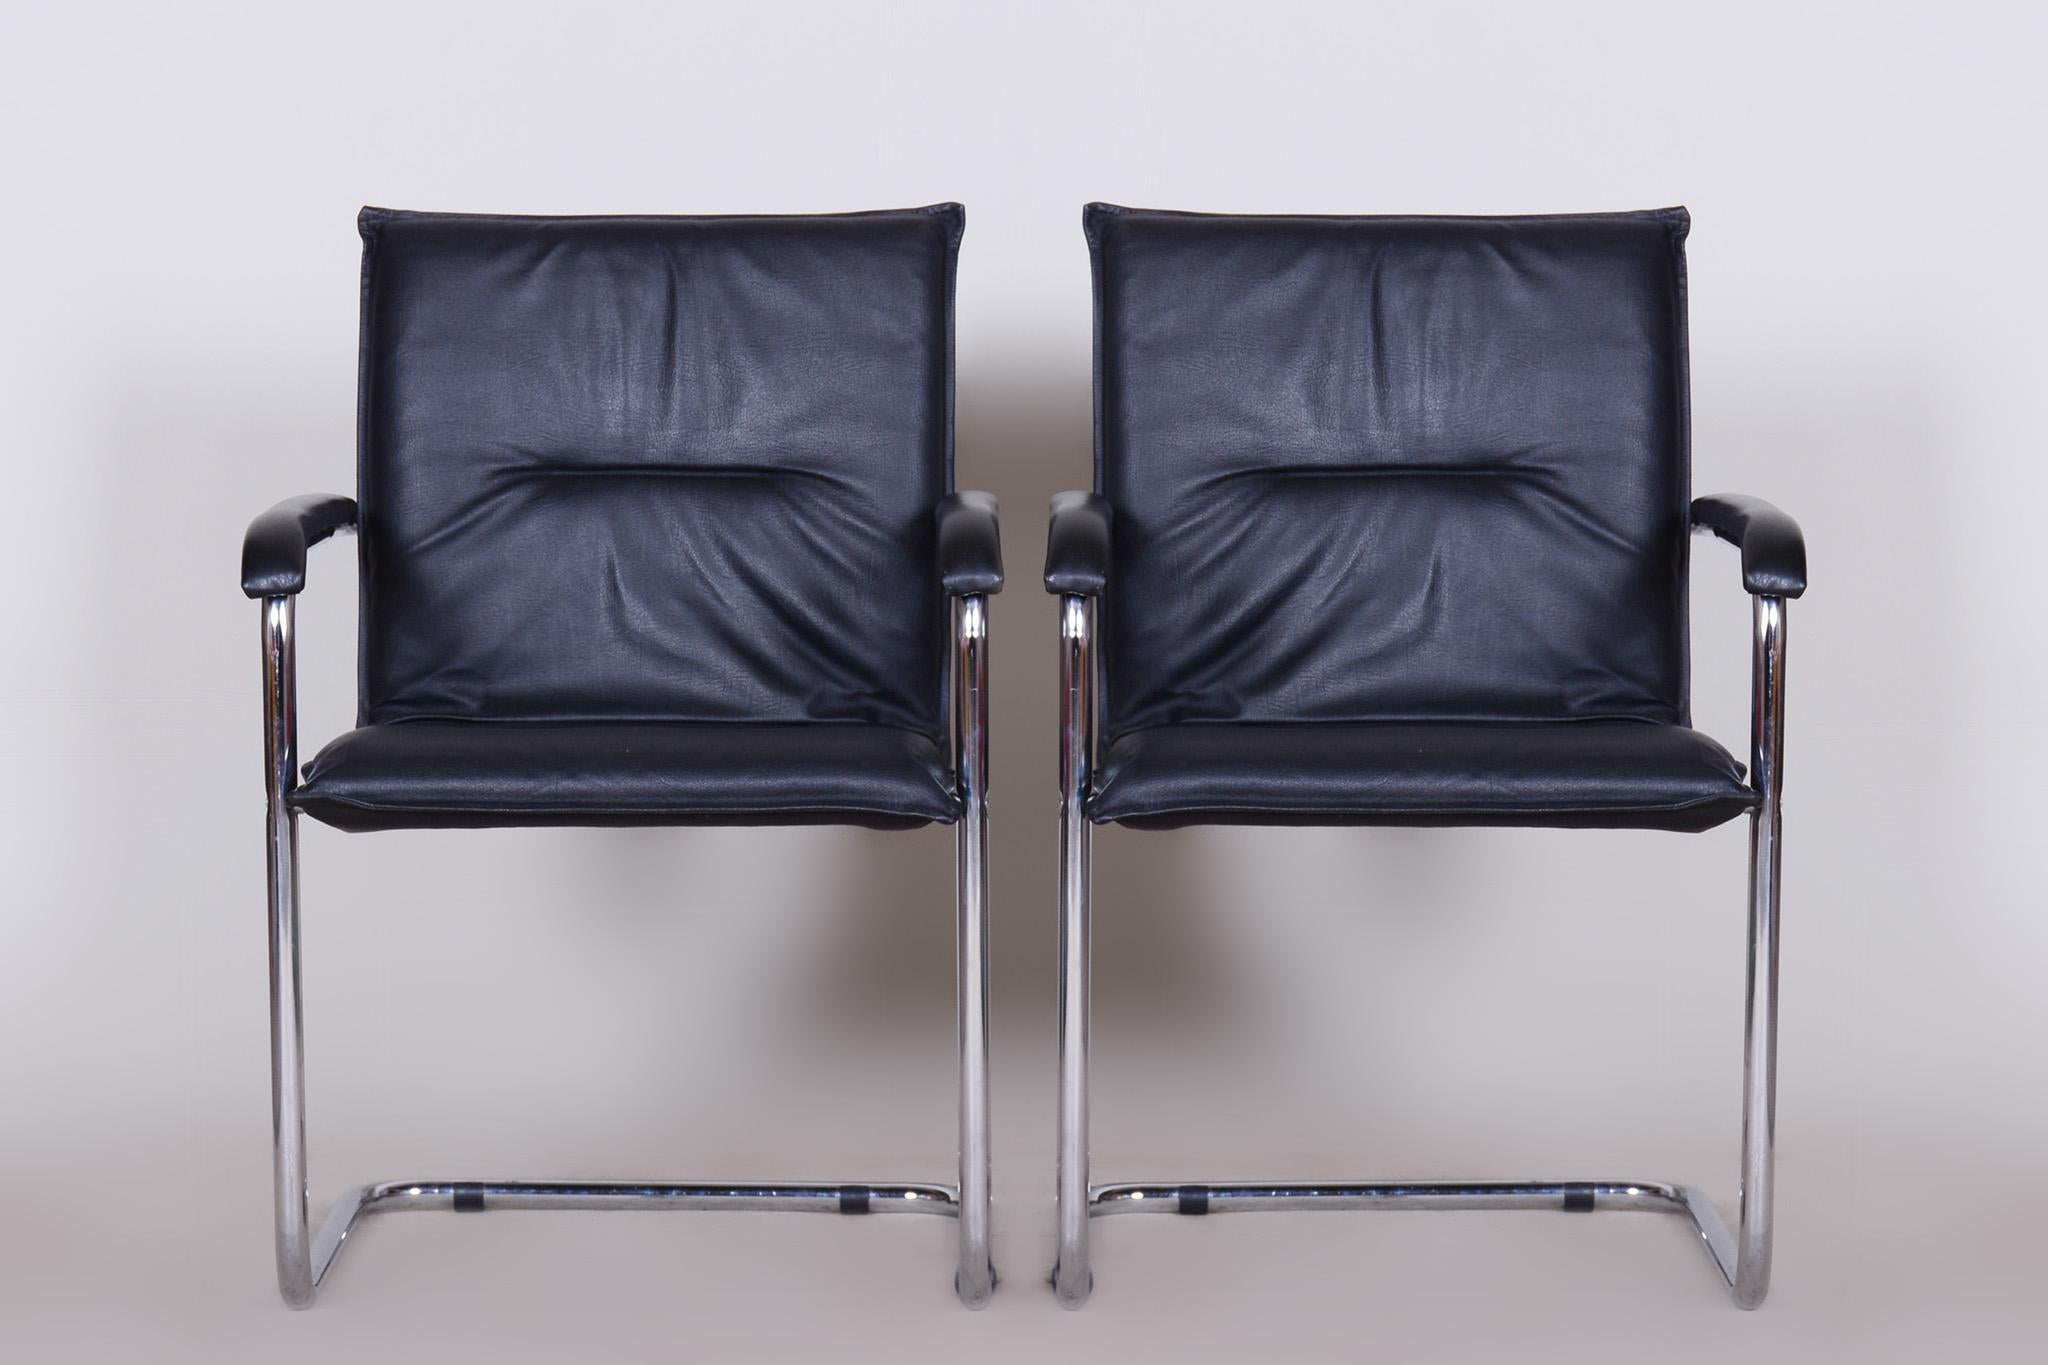 Paire de chaises Bauhaus noires, cuir artificiel

Période : 1970-1979
Source : Allemagne
MATERIAL : Cuir artificiel, acier chromé

Etat d'origine bien préservé.
Le chrome et le cuir sont nettoyés professionnellement.